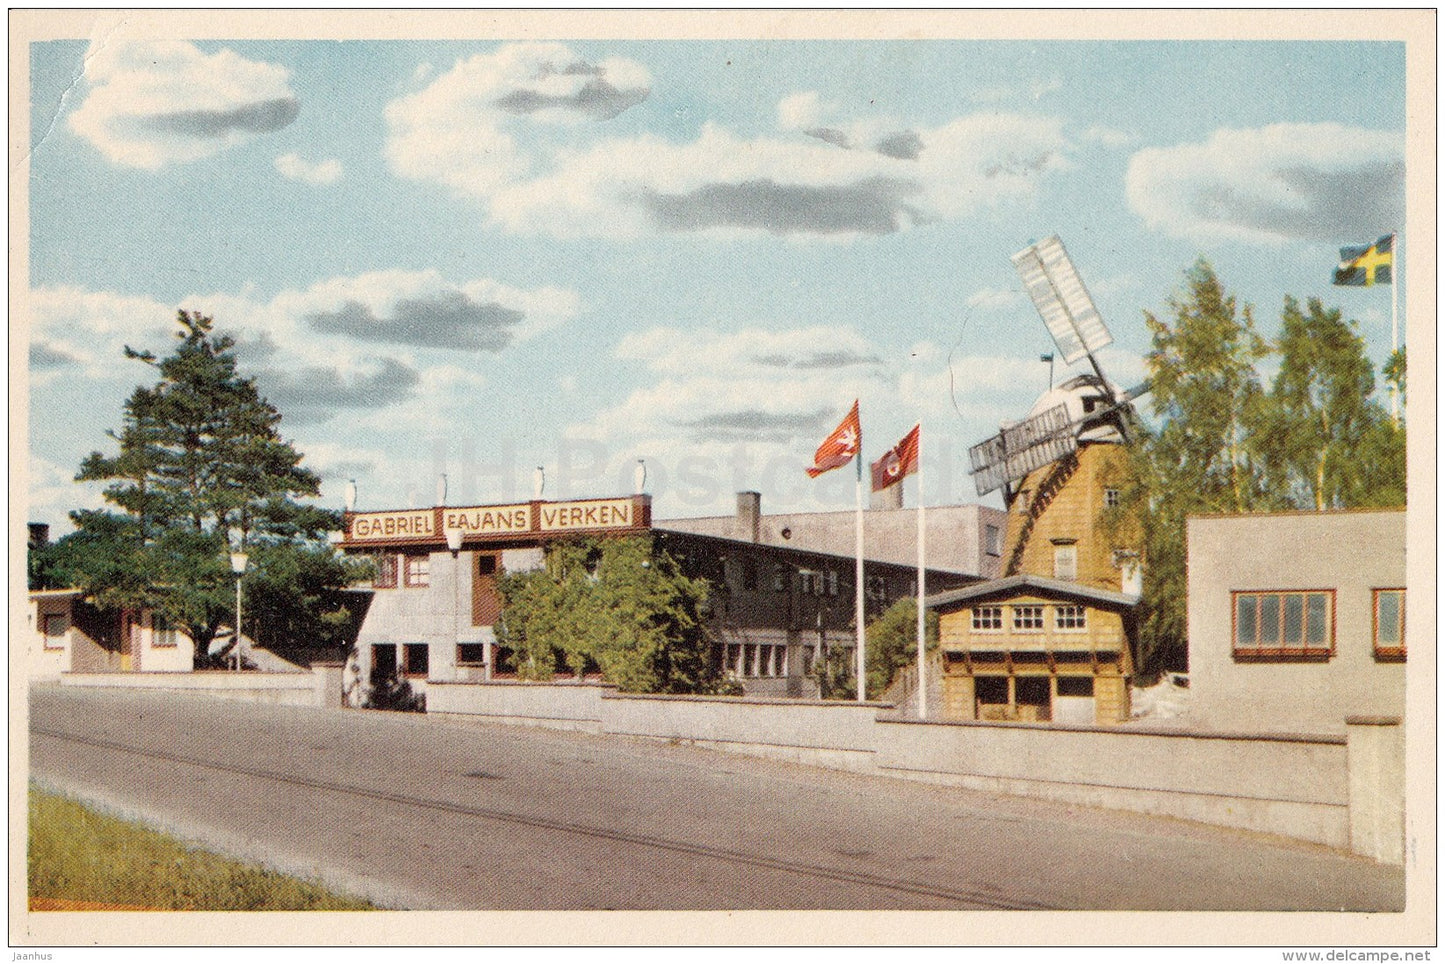 Keramikfabriken i Timmernabben - Ceramics Factory in Timmernabben - windmill - Sweden - unused - JH Postcards